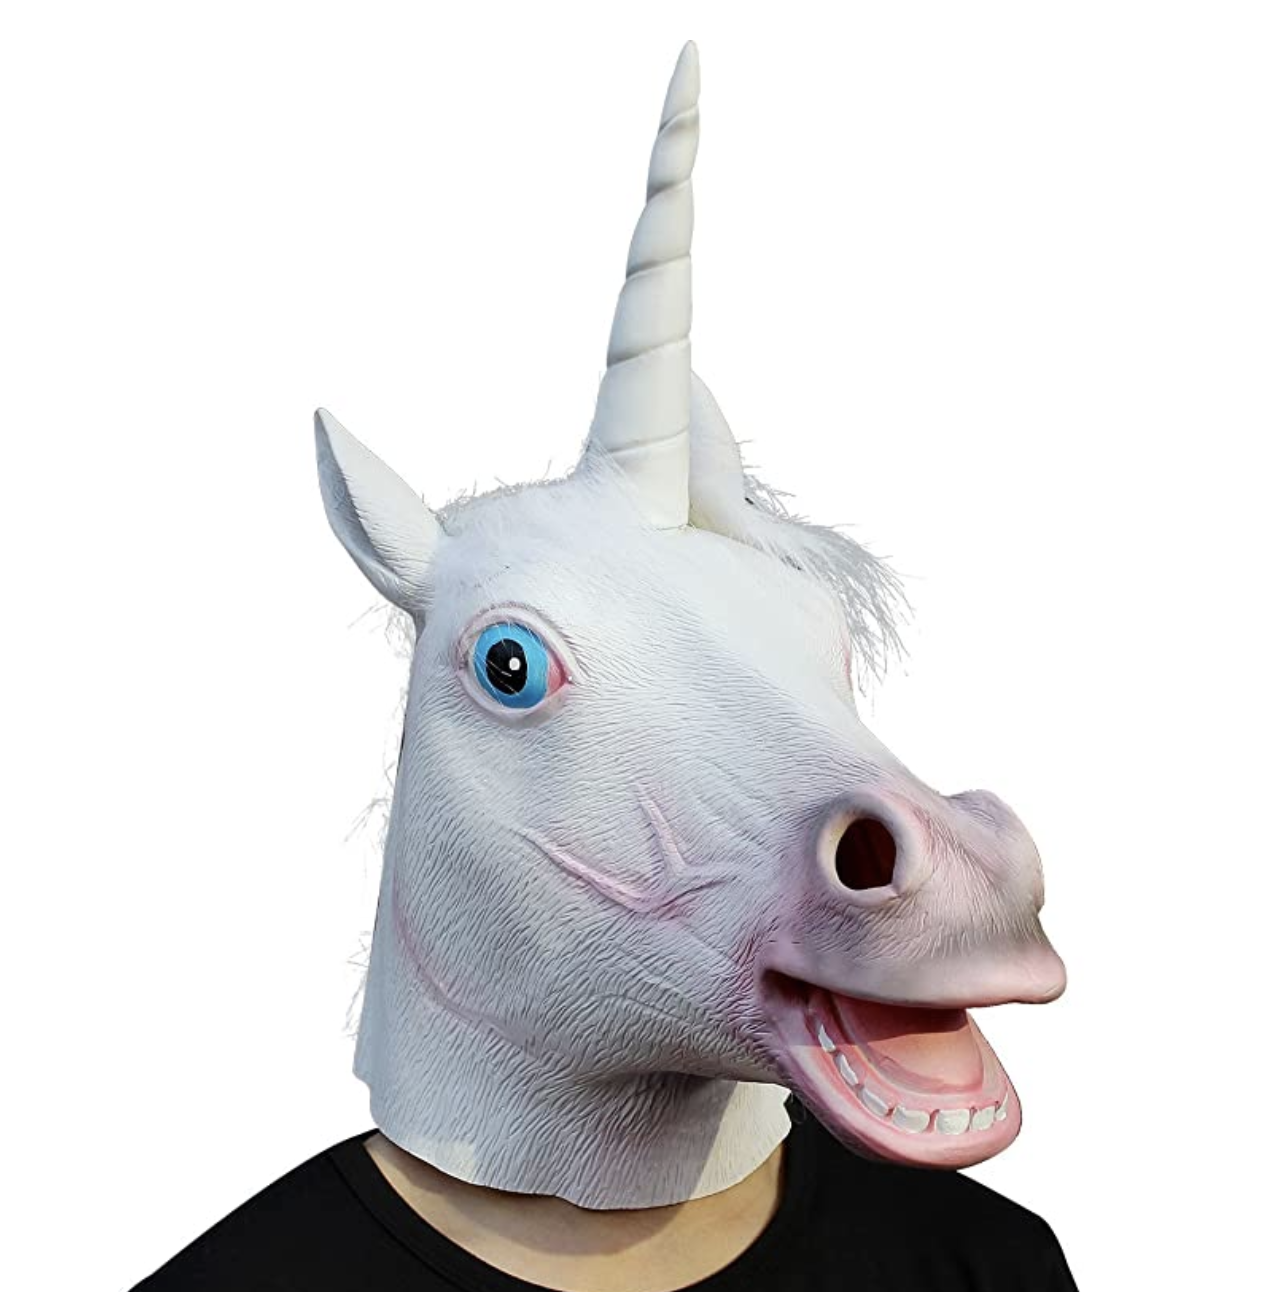 A weird mask of a unicorn